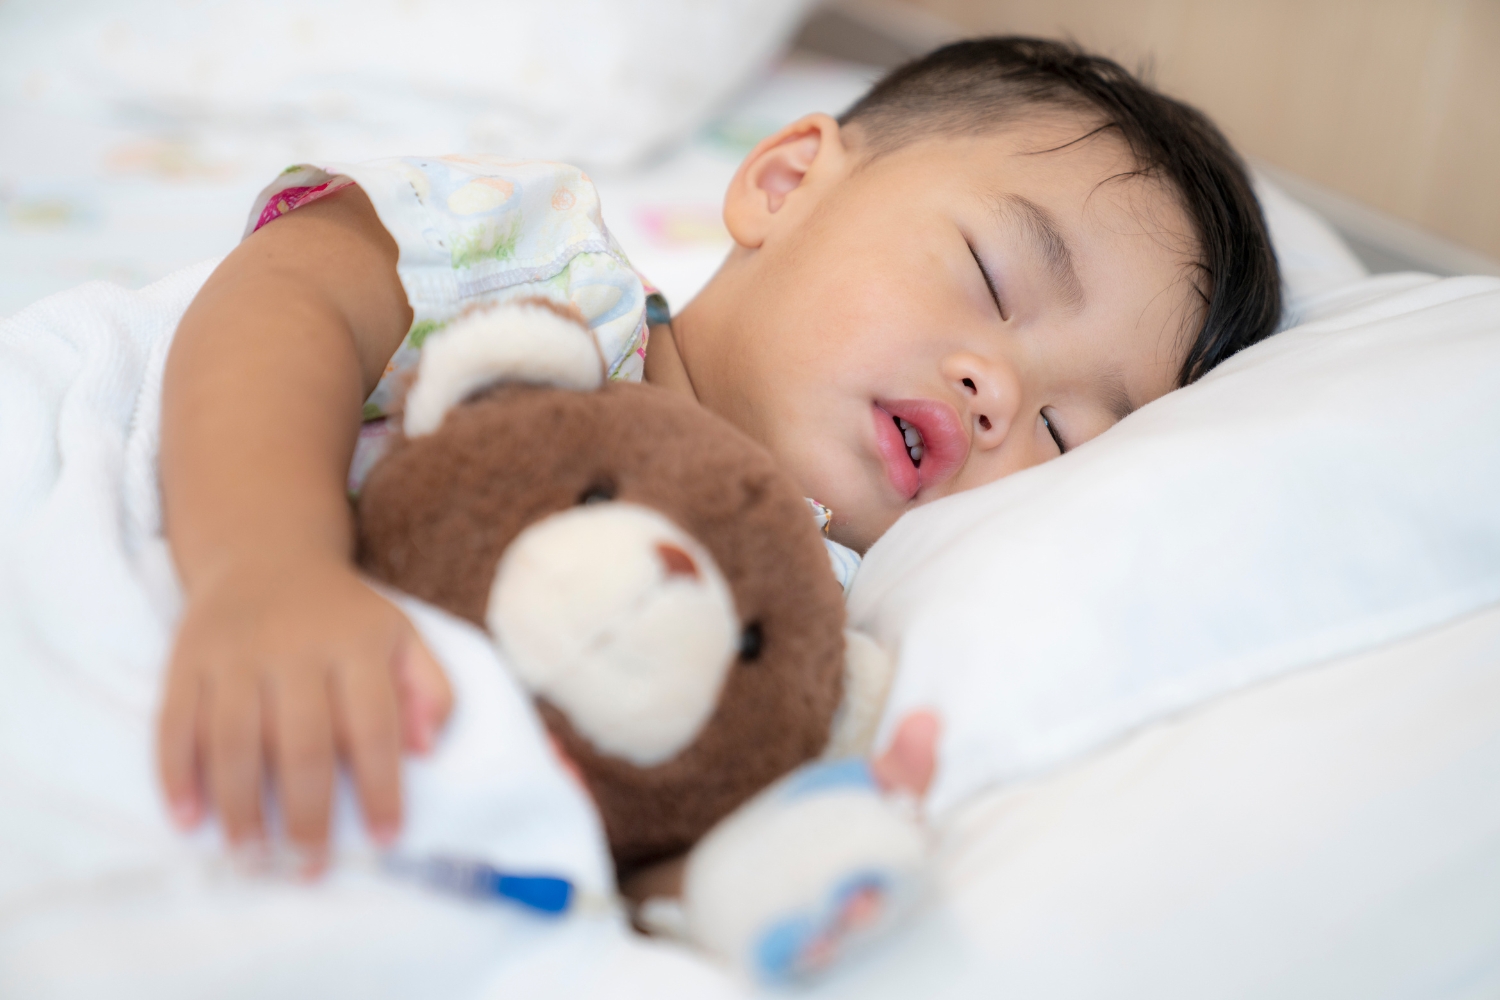 Tóm lại, việc sử dụng đồ chơi giúp bé có giấc ngủ ngon và sâu lúc ban đêm cần được thực hiện một cách cẩn thận và thông minh để đảm bảo an toàn và hiệu quả cho sức khỏe và phát triển của bé.